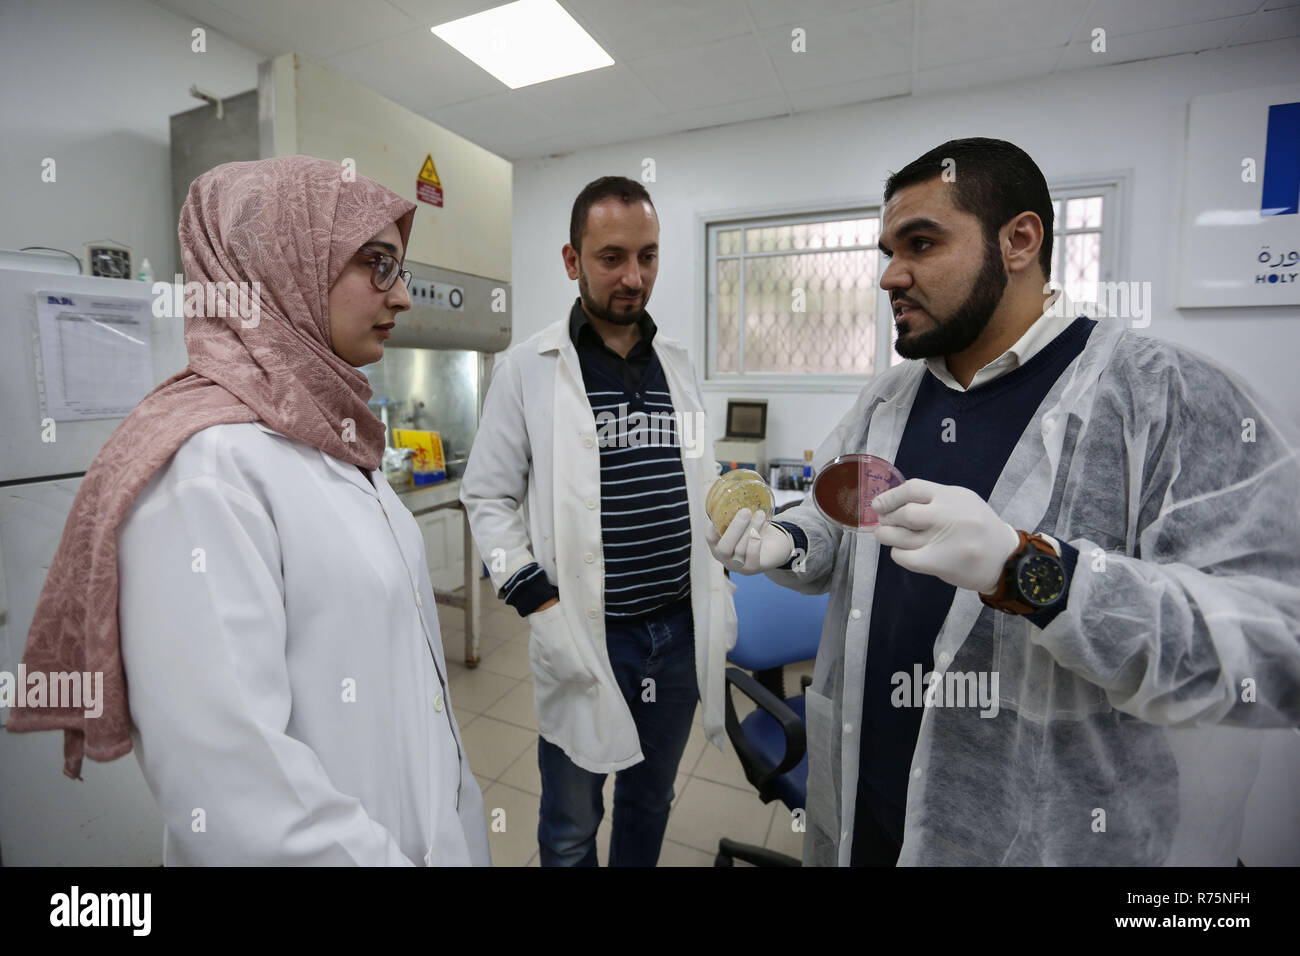 (181208) - GAZA, Dez. 8, 2018 (Xinhua) - Palästinensische junge Wissenschaftler Salah al Quaida (C), 36, Mahmoud al-Hindi (R), 29, und Reem Jabor (L), 22, Arbeiten in einem Labor in Gaza Stadt, am Dez. 5, 2018. Ein Team von jungen palästinensischen Wissenschaftlerinnen aus dem Gazastreifen sucht Antibiotika und Pilz durch Nanotechnologie zu entwickeln. Das Team, das aus drei jungen Menschen ist, gewann vor kurzem den ersten Platz beim Wettbewerb der Innovationen im Gesundheitswesen auf der Ebene der Universitäten in den Gazastreifen. Mit Spotlight: Gaza junge Wissenschaftler betrachten natürliche Antibiotika durch Nanotechnologie zu entwickeln. (Xi Cr Stockfoto